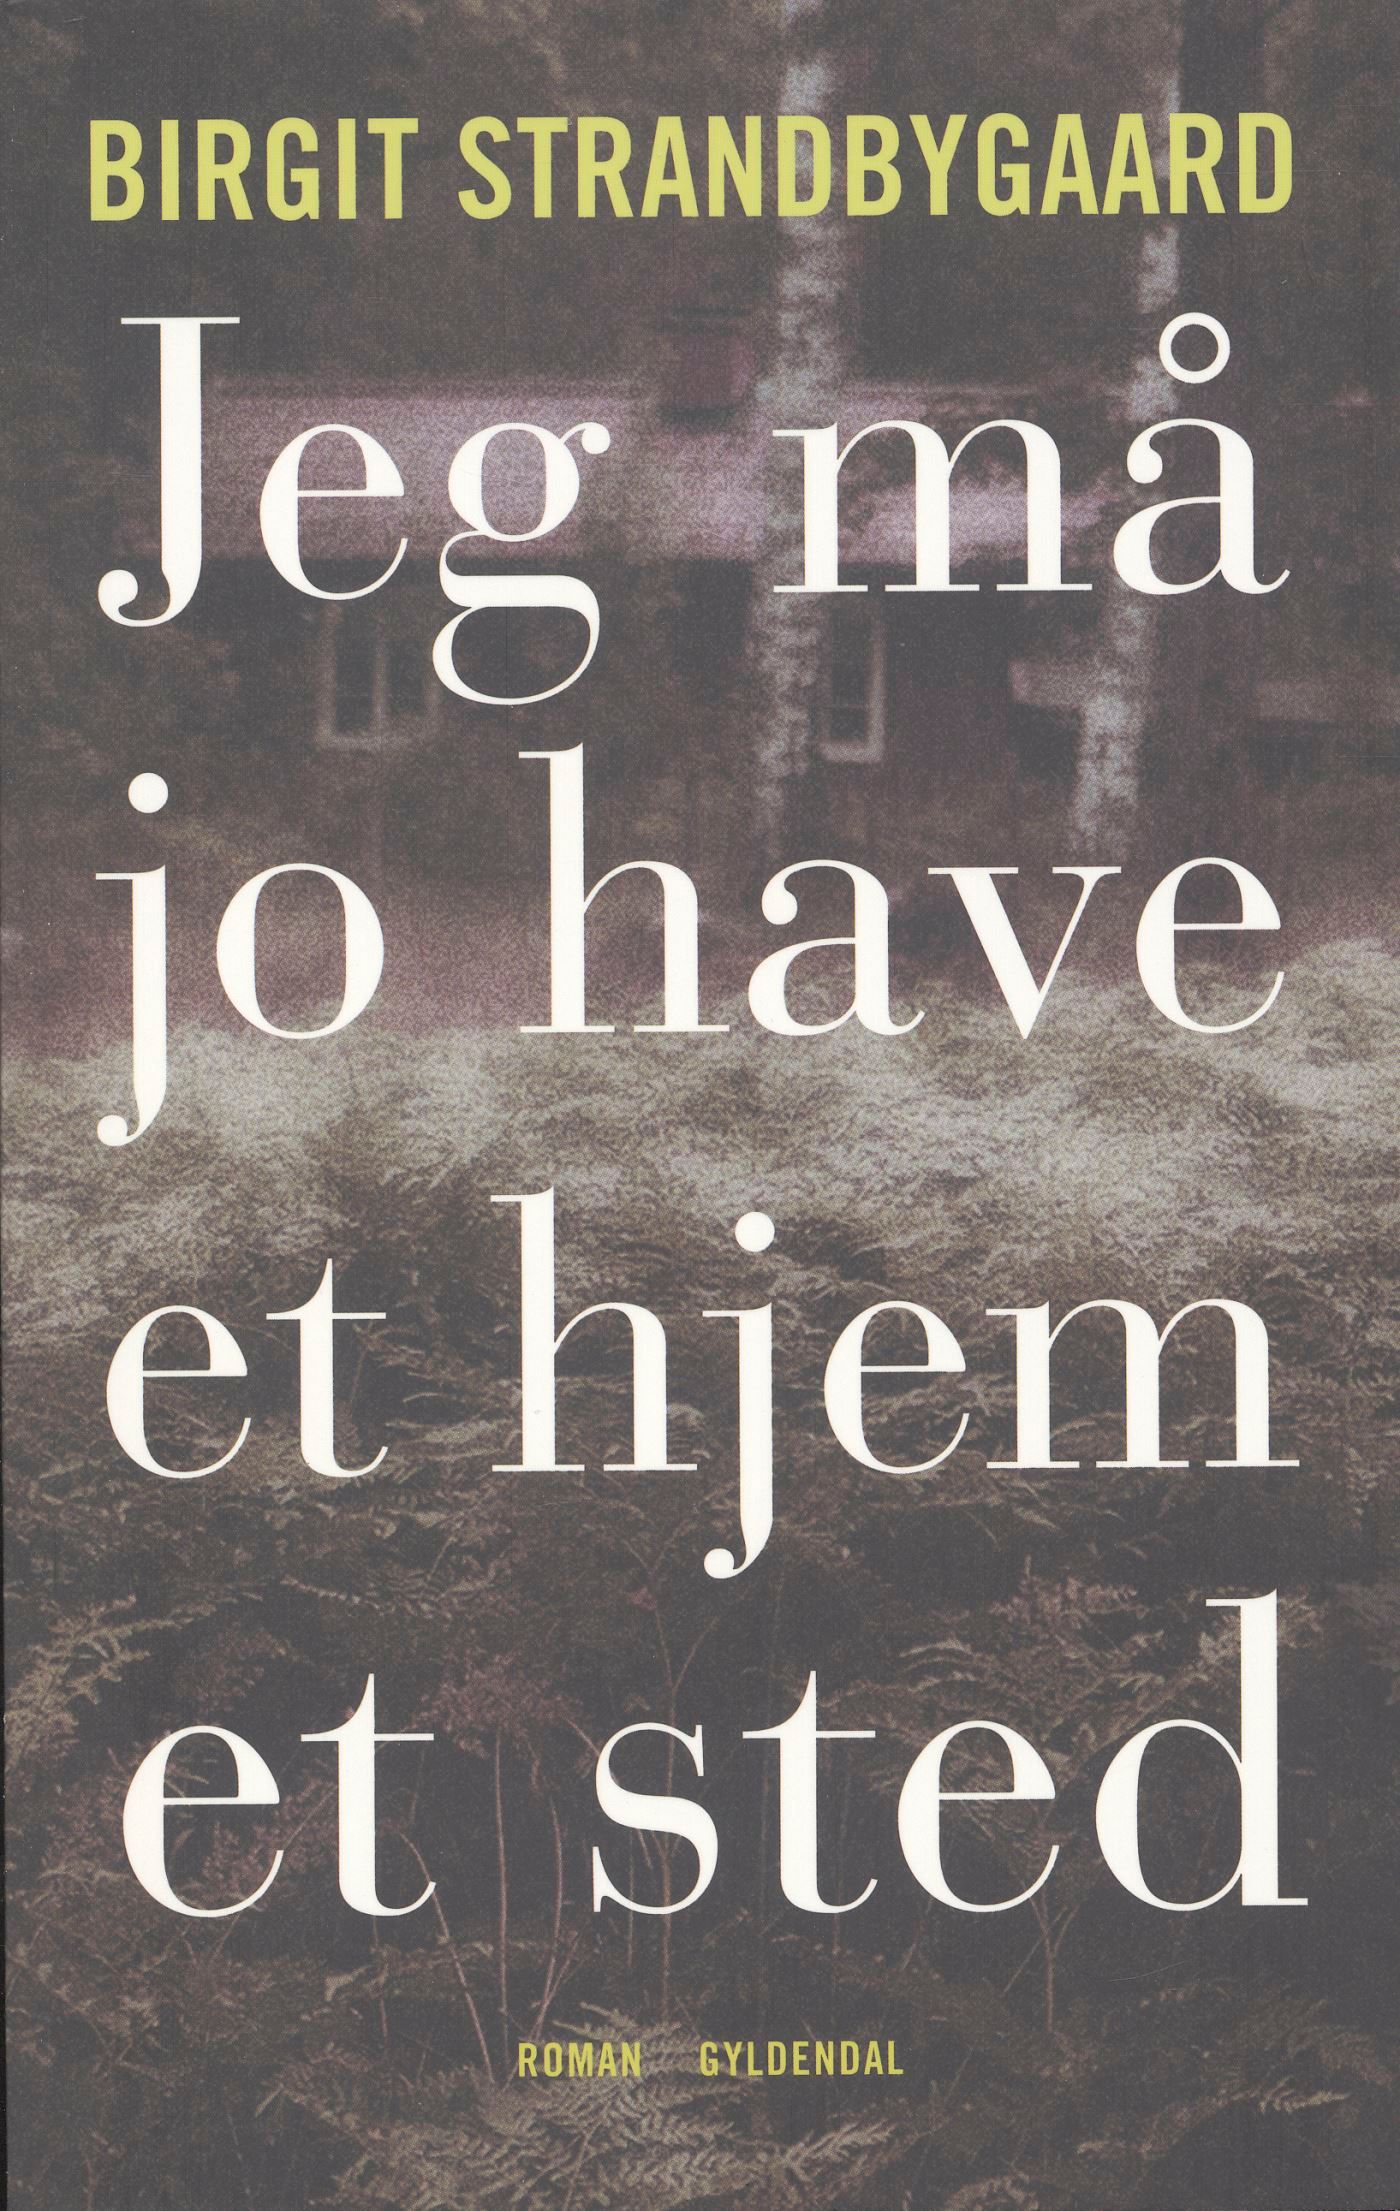 Jeg må jo have et hjem et sted, ljudbok av Birgit Strandbygaard